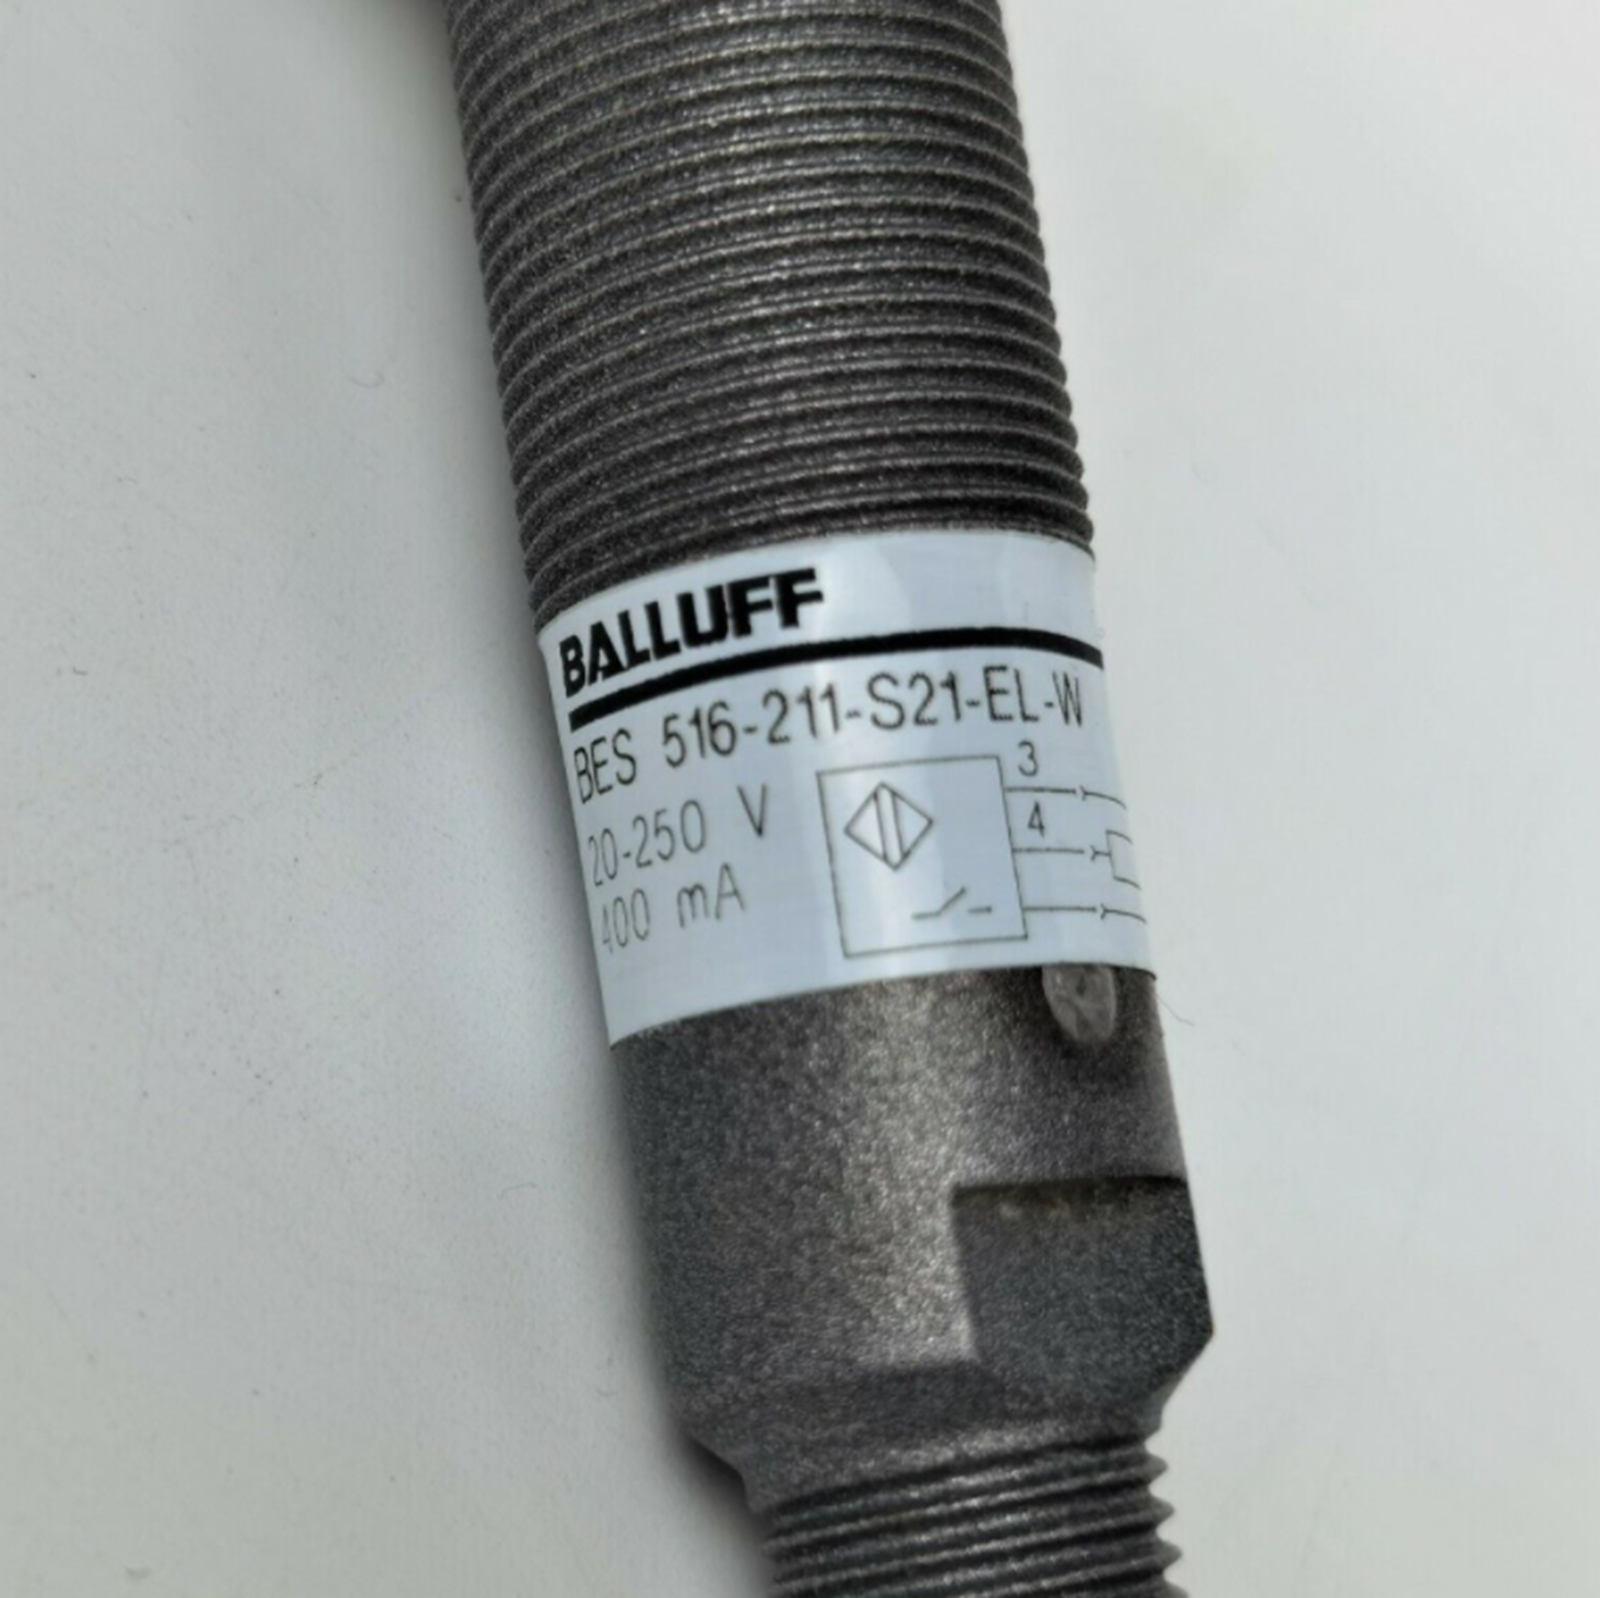 Balluff BES516-211-S21-EL-W Inductive Proximity Sensor